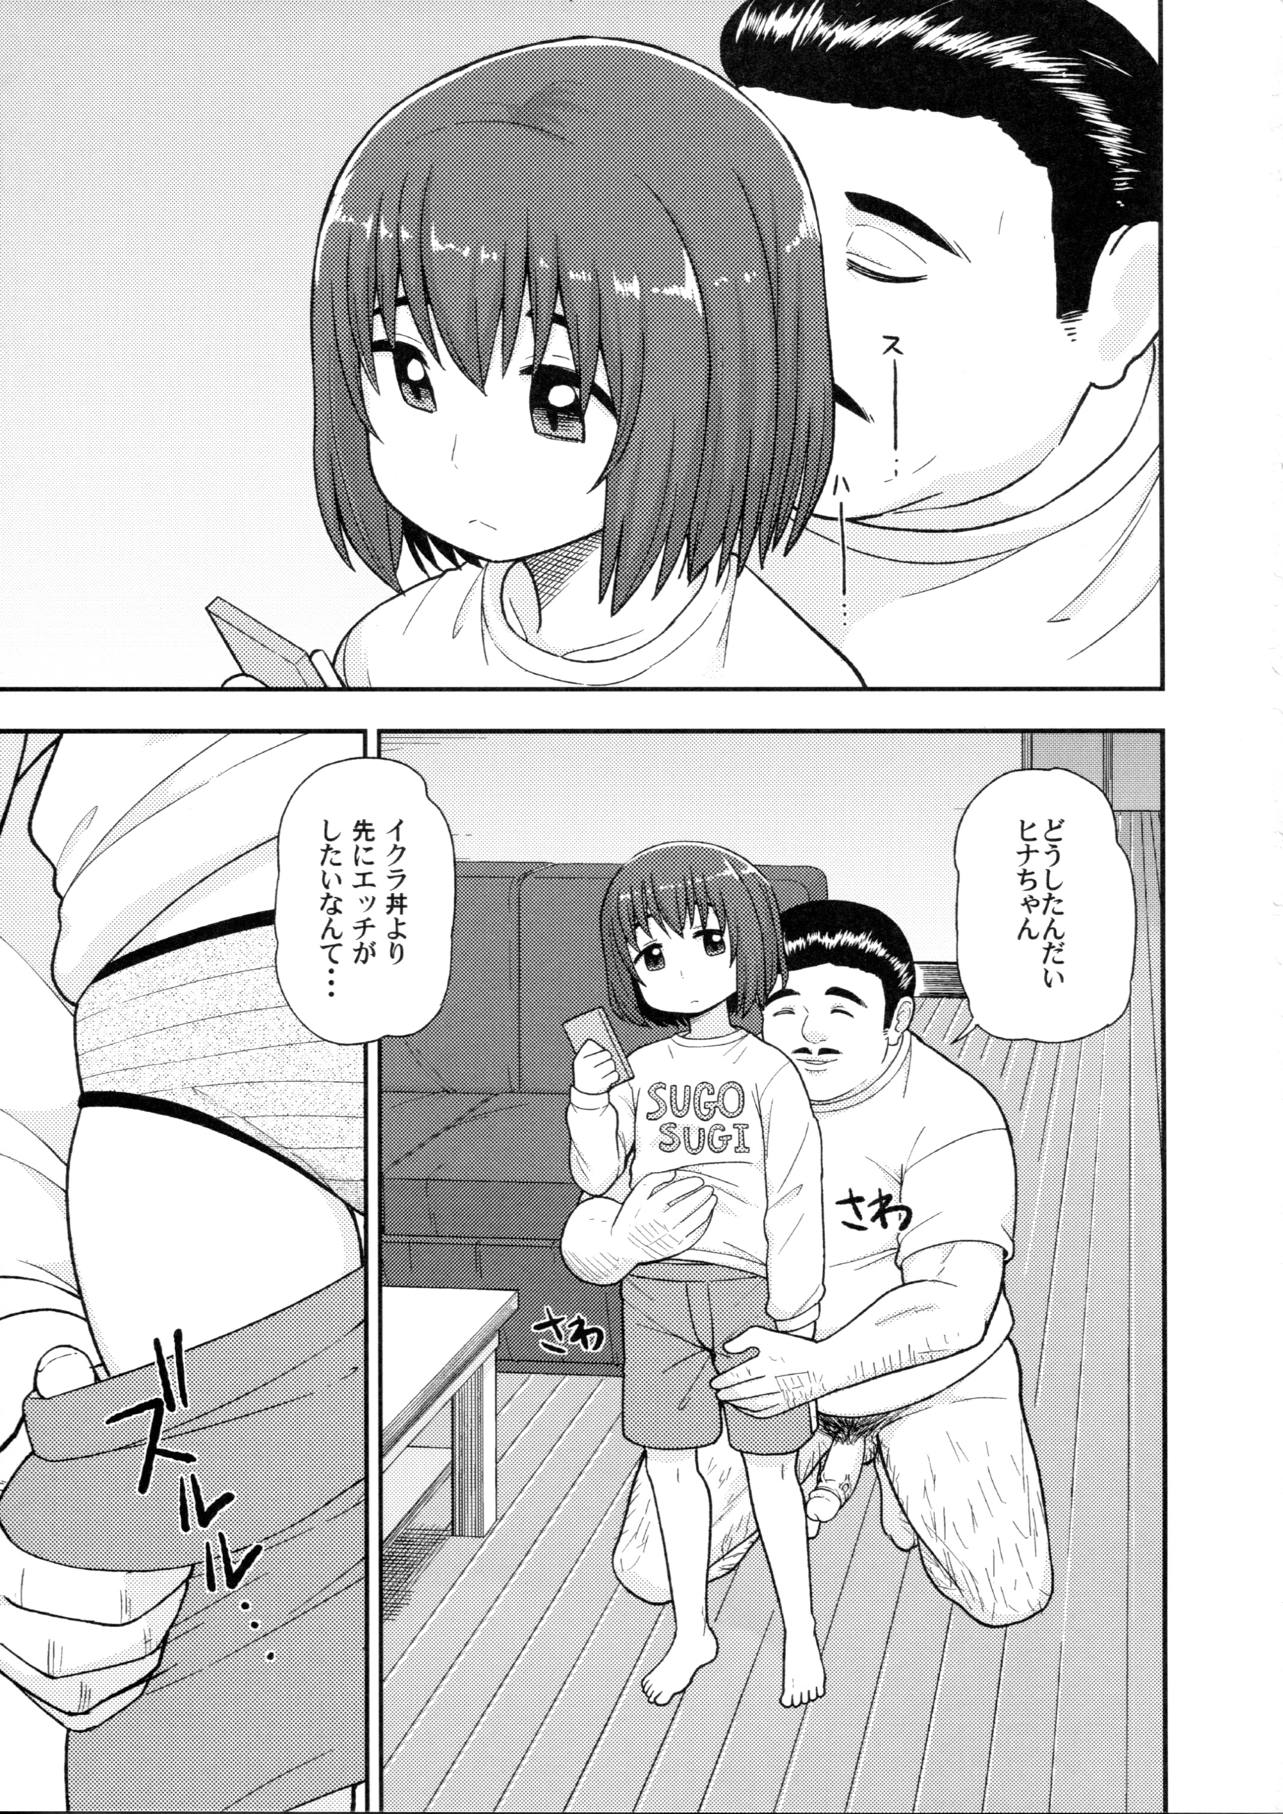 【ヒナまつり】女子中学生のヒナちゃんが新田に内緒でおじさんと援助交際するなんて…。の画像14枚目